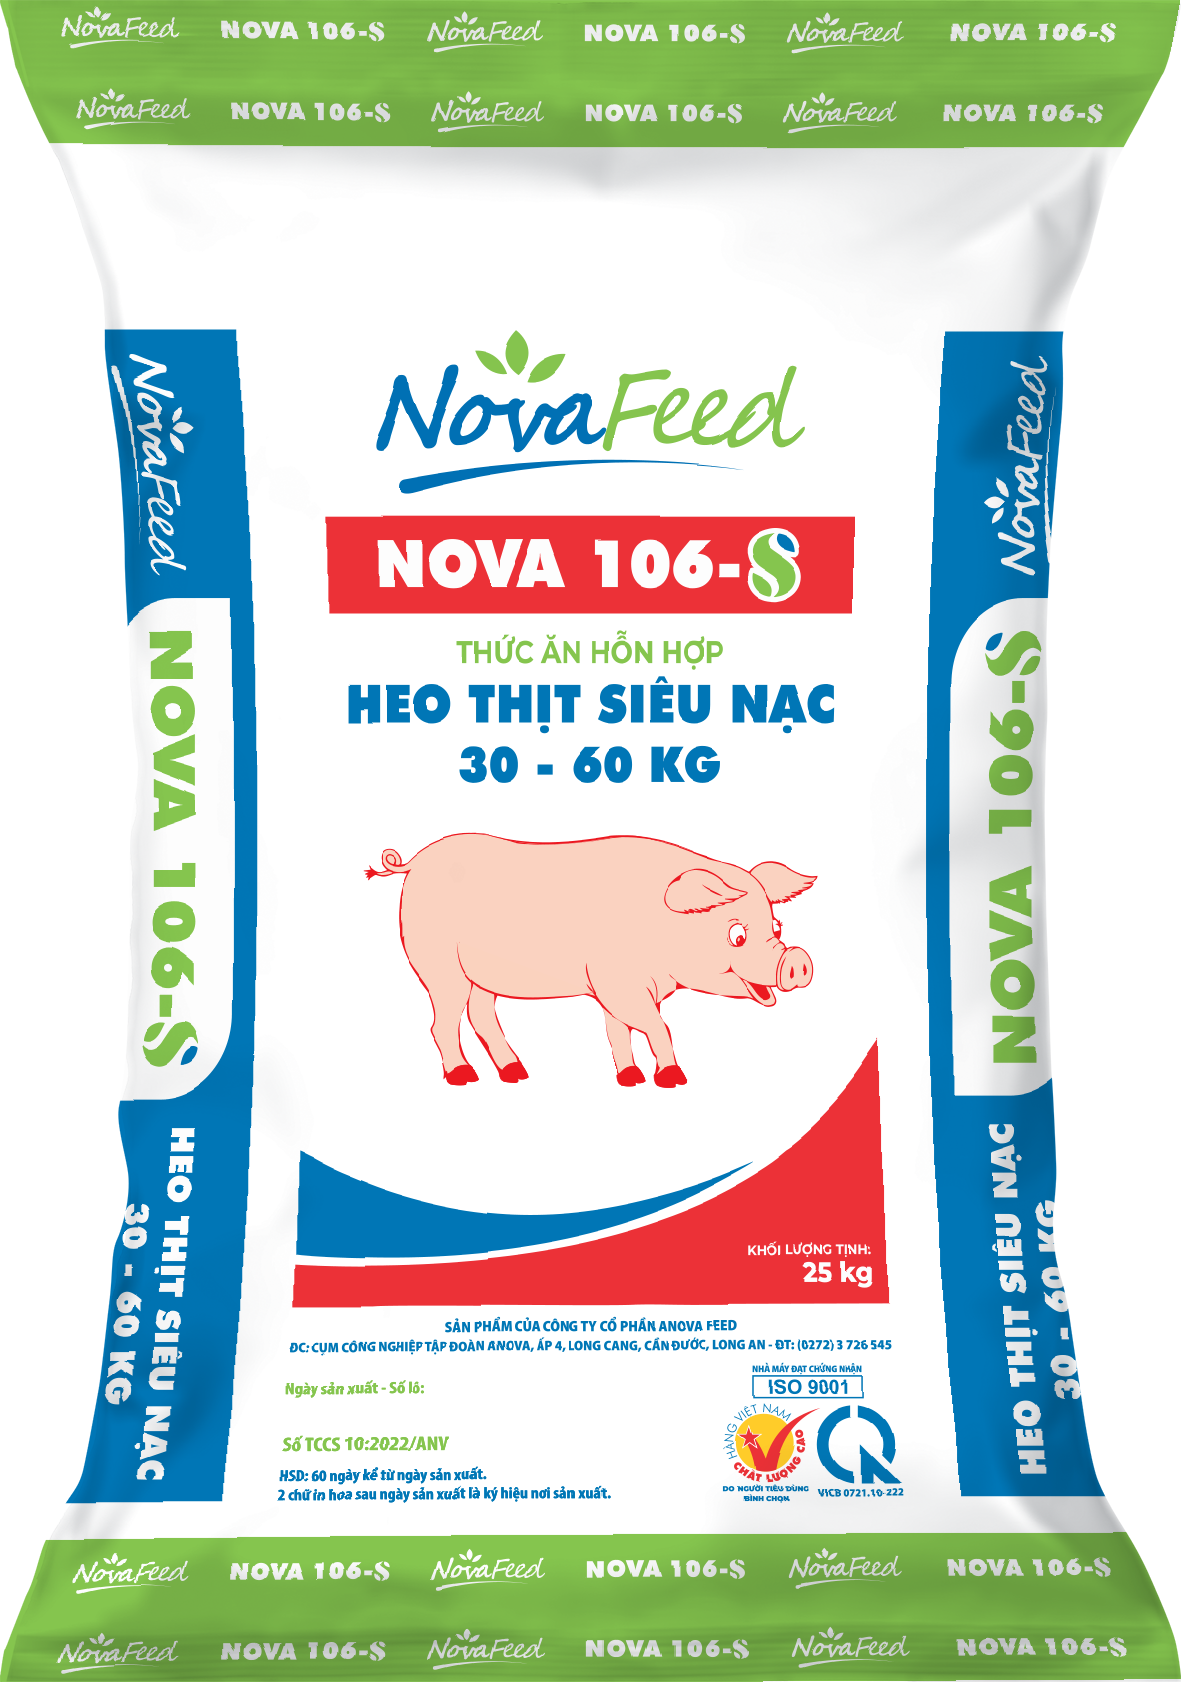 Thức ăn hỗn hợp heo thịt siêu nạc 30 - 60 KG NOVA 106-S